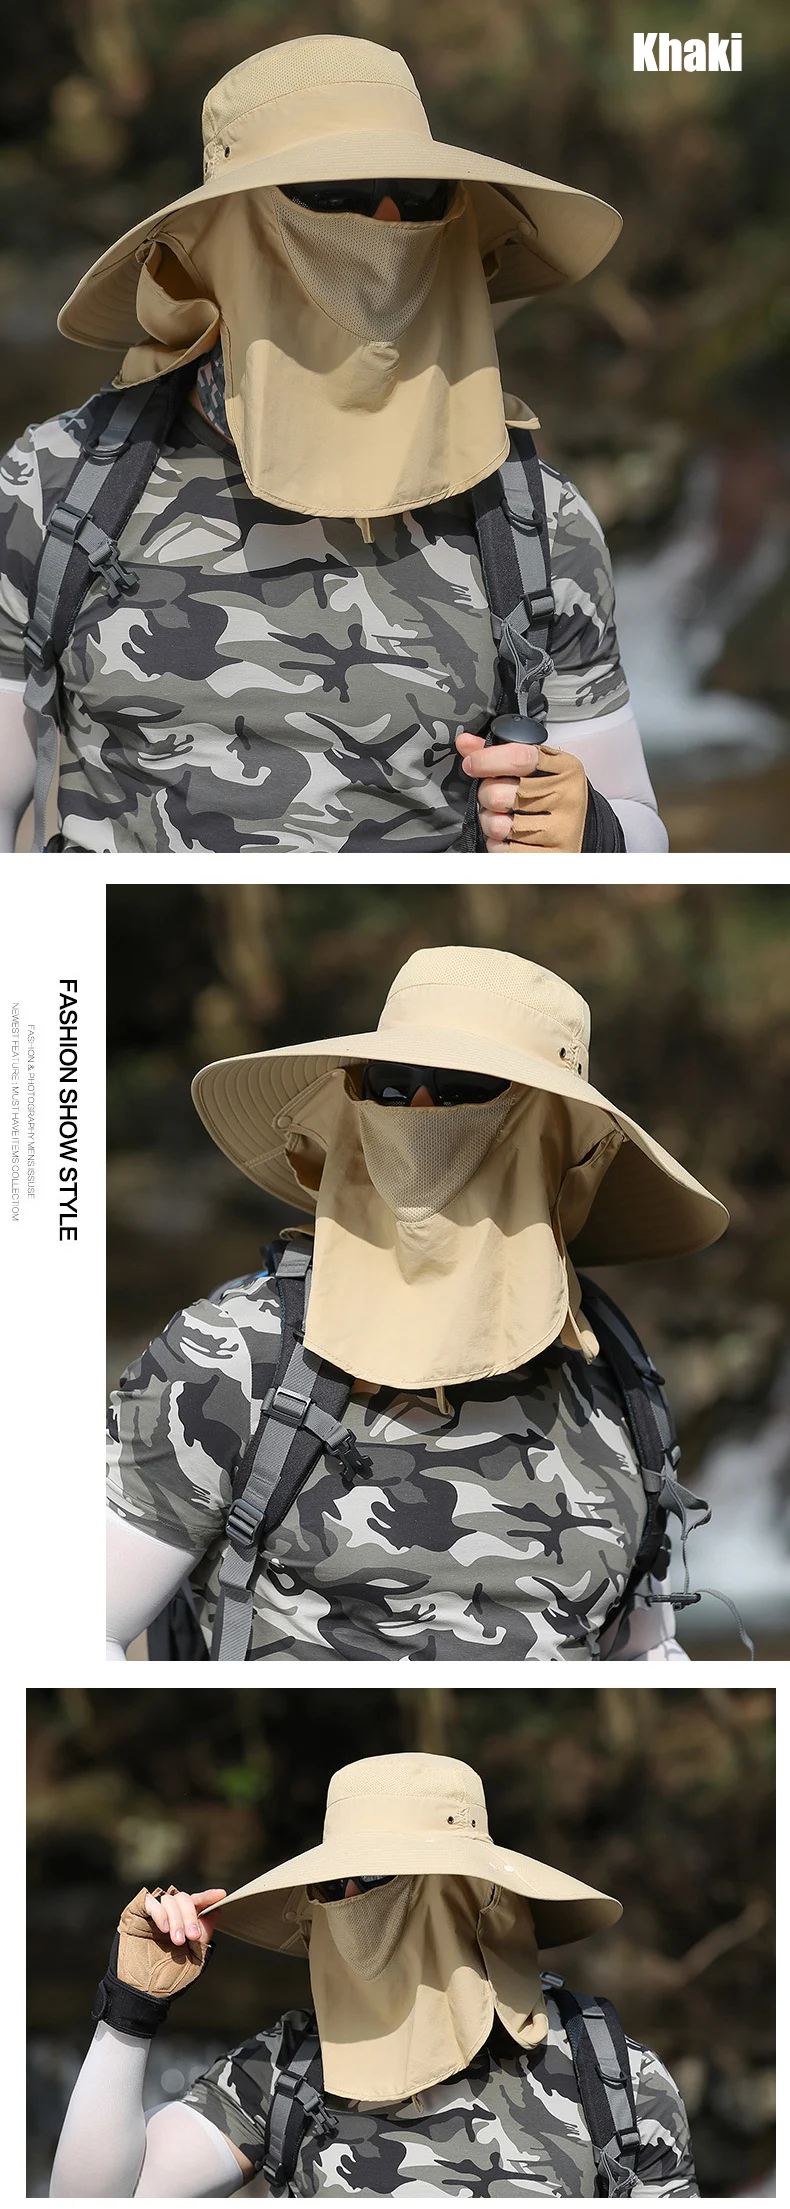 Летняя Солнцезащитная шляпа ведро для мужчин и женщин Boonie шляпа с горлышком наружная защита от ультрафиолета Большие широкие полями Туризм рыболовная сетка дышащая